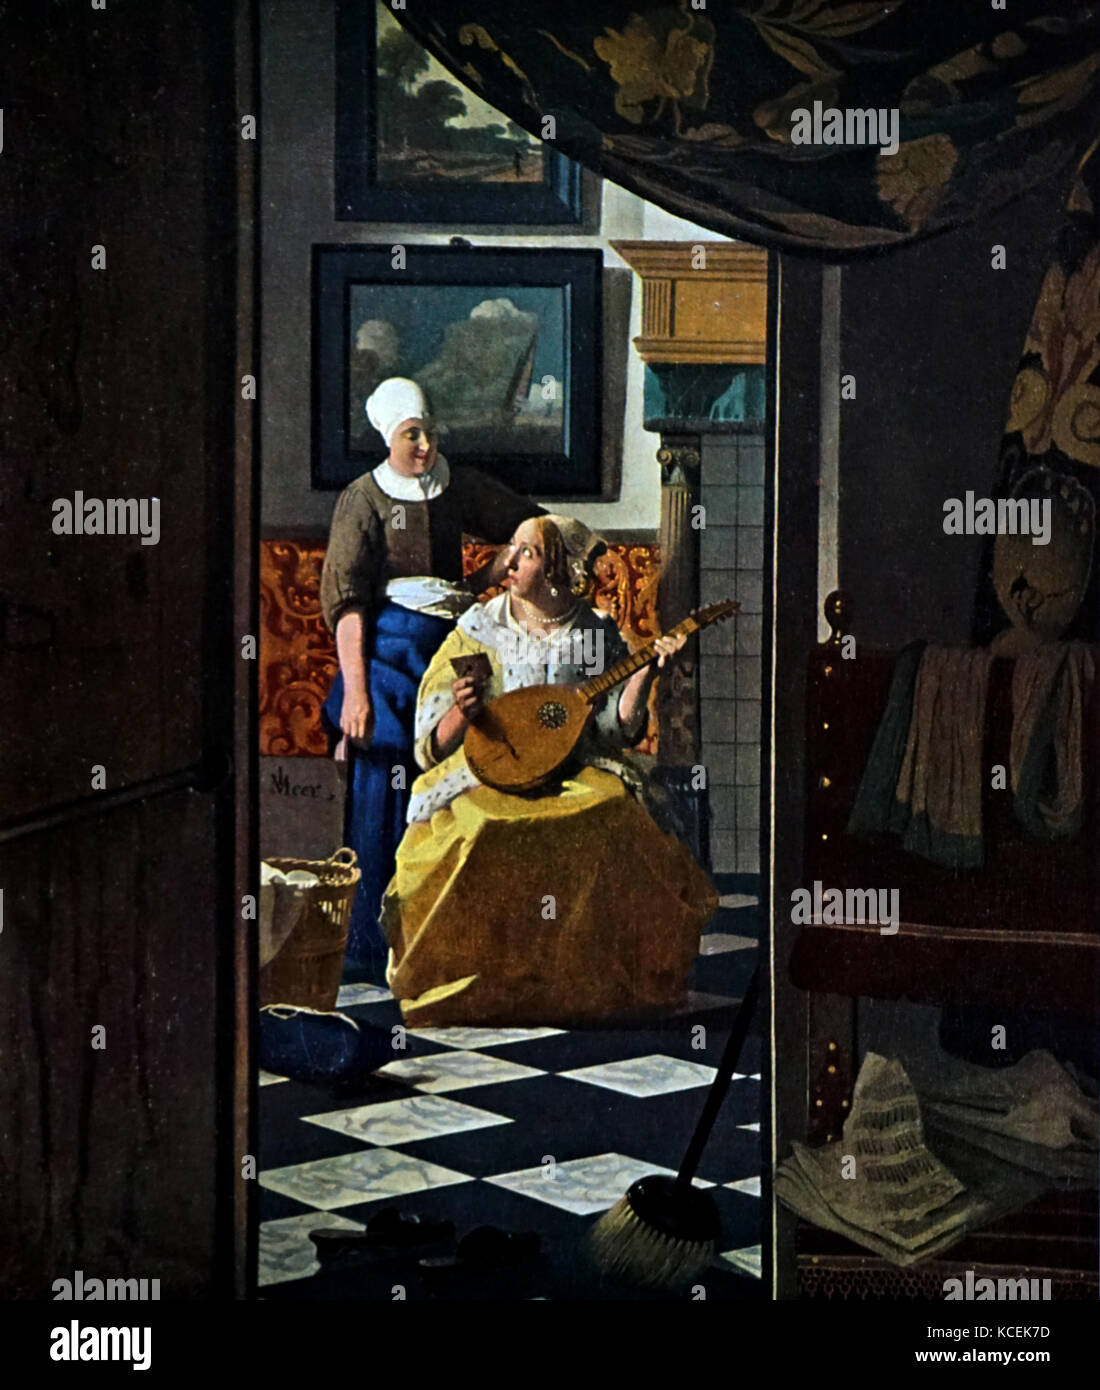 Gemälde mit dem Titel "Der Liebesbrief" von Johannes Vermeer (1632-1675) ein niederländischer Maler. Vom 17. Jahrhundert Stockfoto